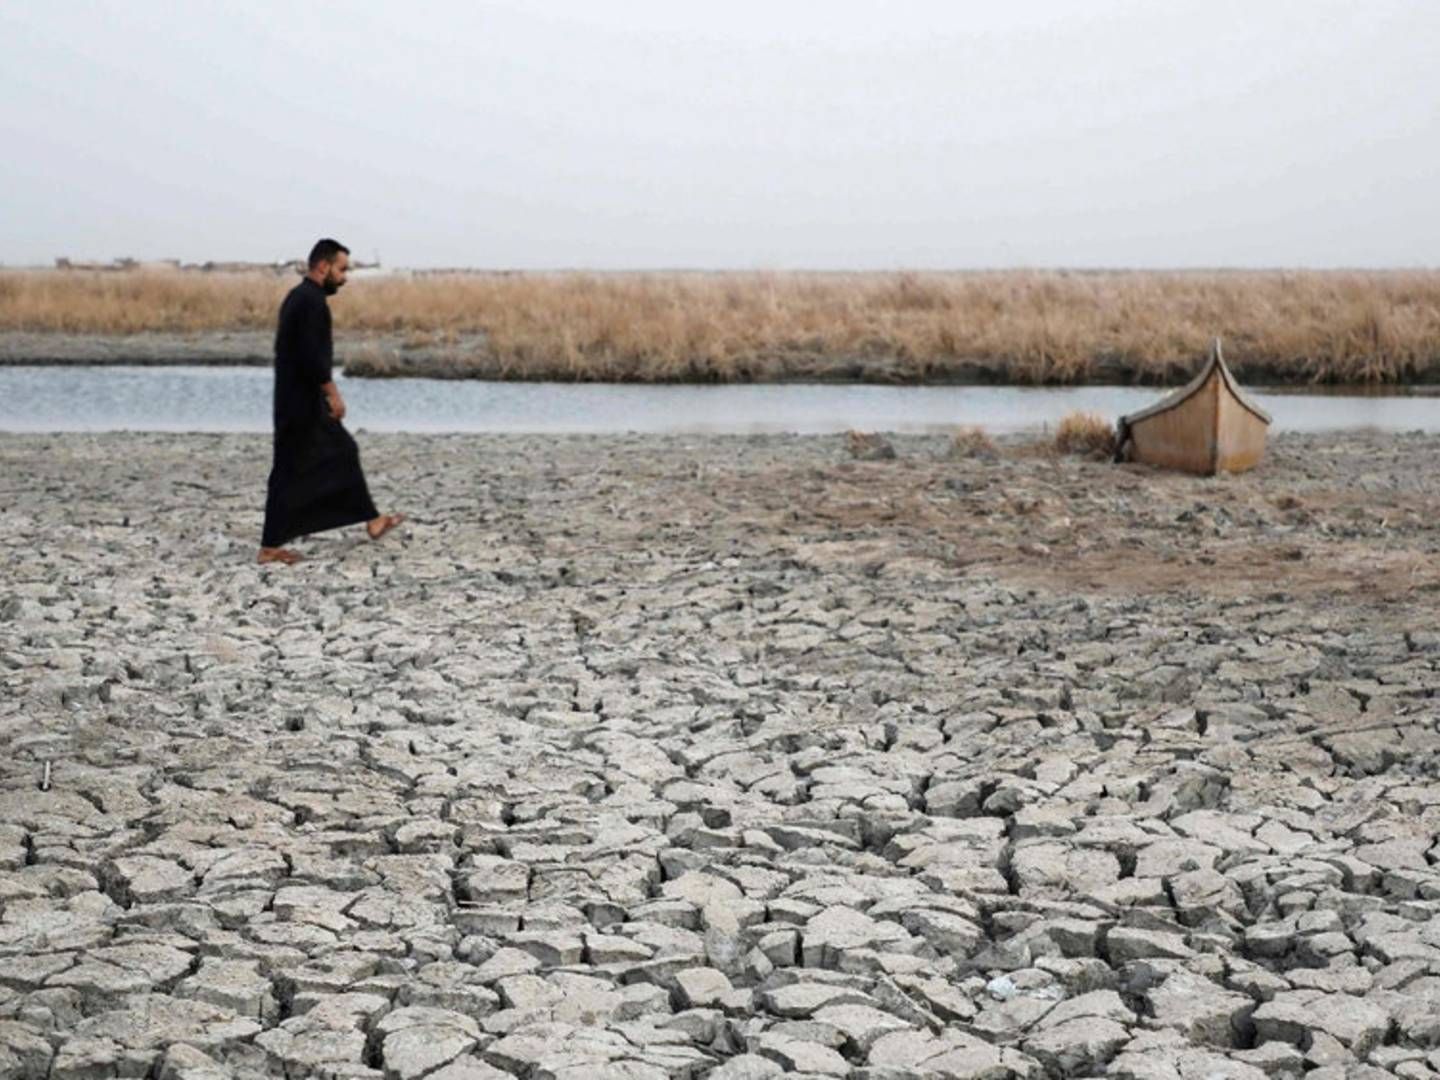 Det sydlige Spanien, Grækenland og Tyrkiet vil blive hårdest ramt, når vandmangel tager til i Europa i de kommende årtier, siger Verdensnaturfonden, WWF, som forudser tørke og lav vandstand en række steder på kontinentet fremover. | Foto: Asaad Niazi/Ritzau Scanpix